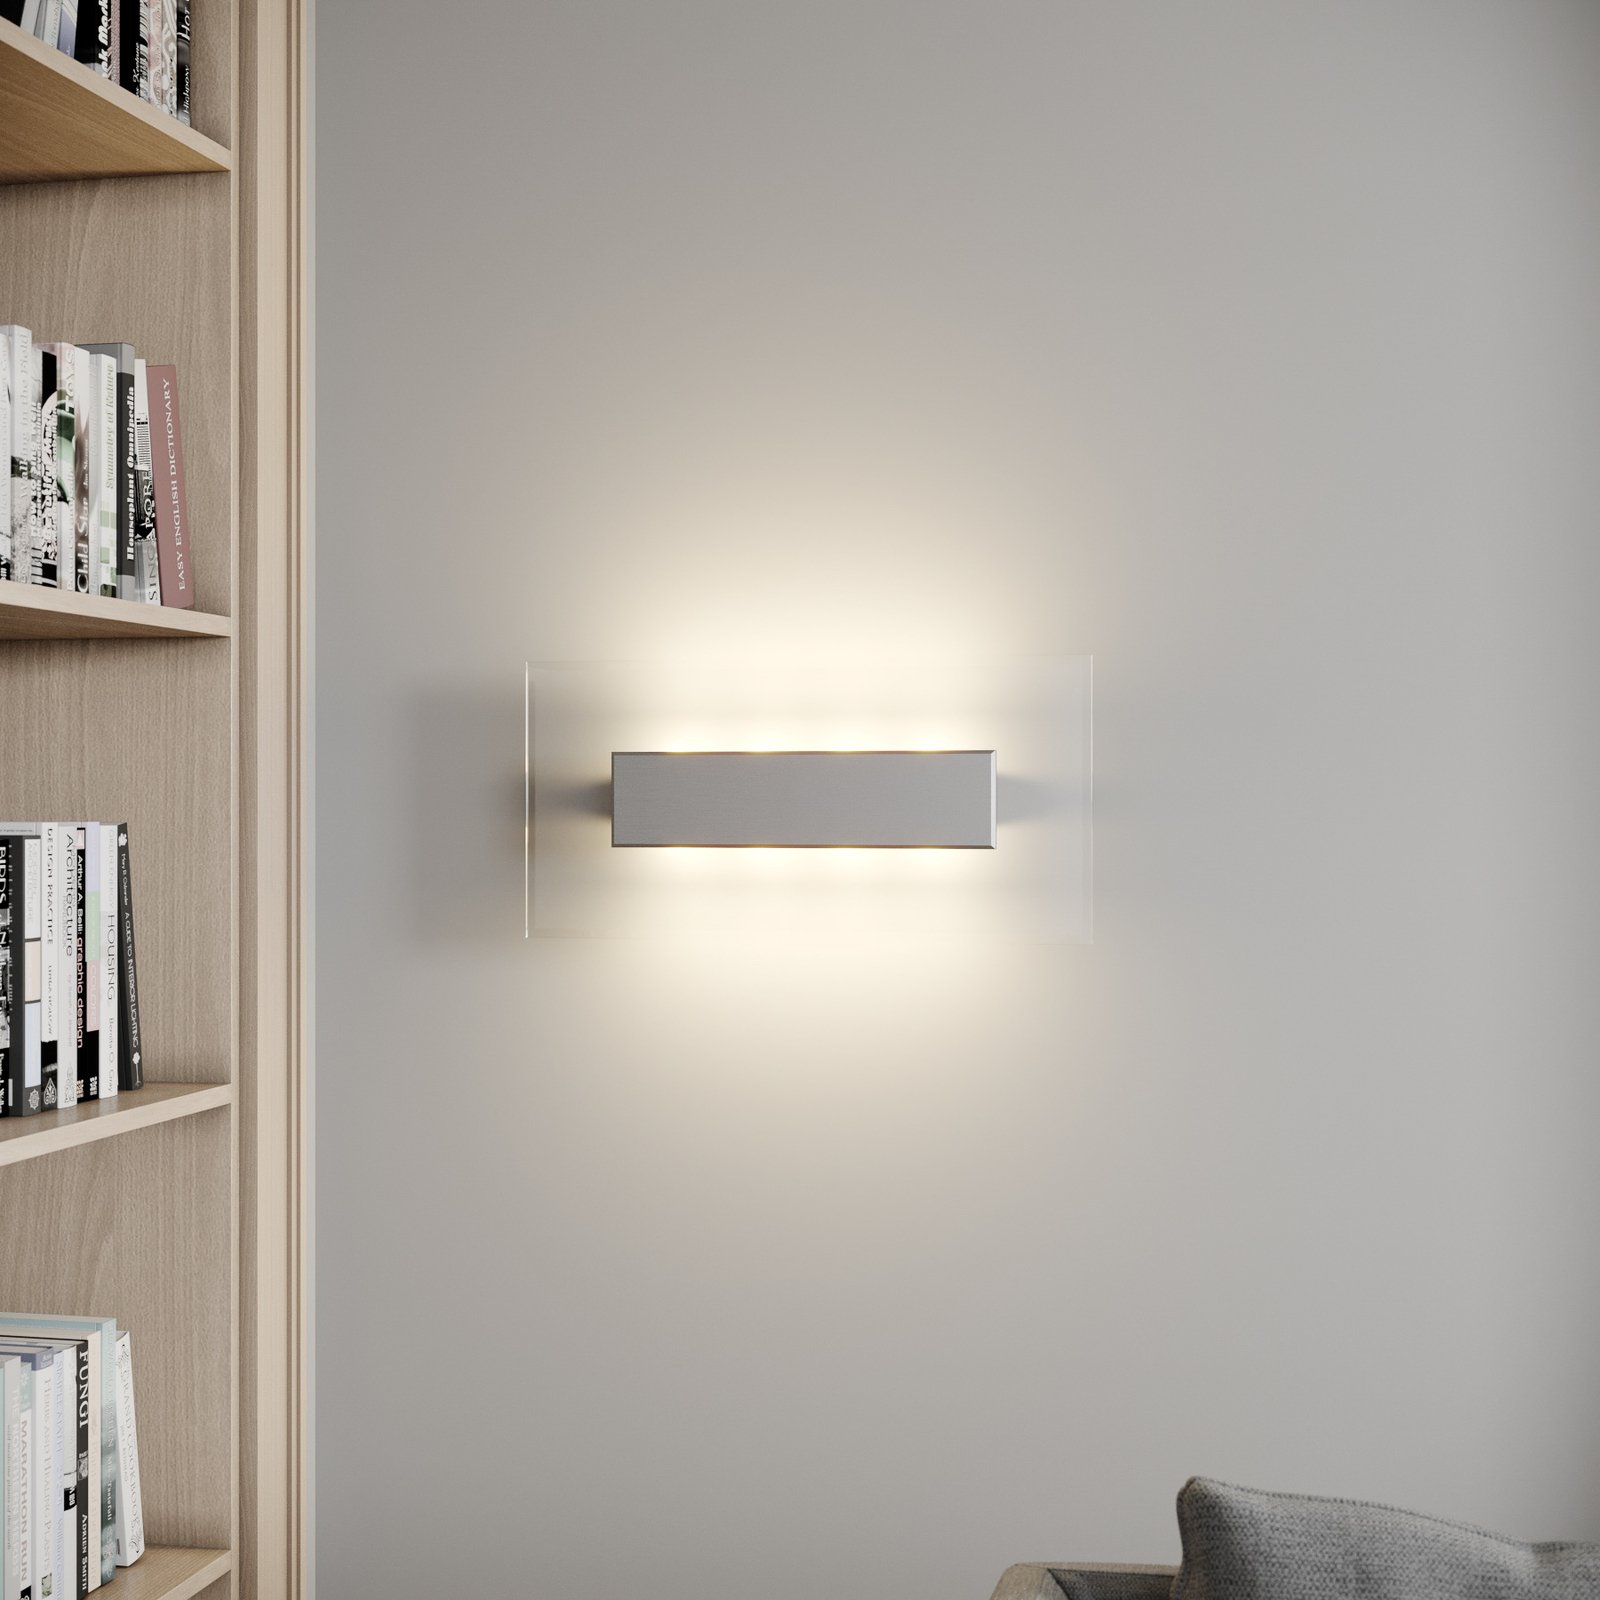 Quitani LED-vägglampa Lole, aluminium, 59 x 29 cm, glas